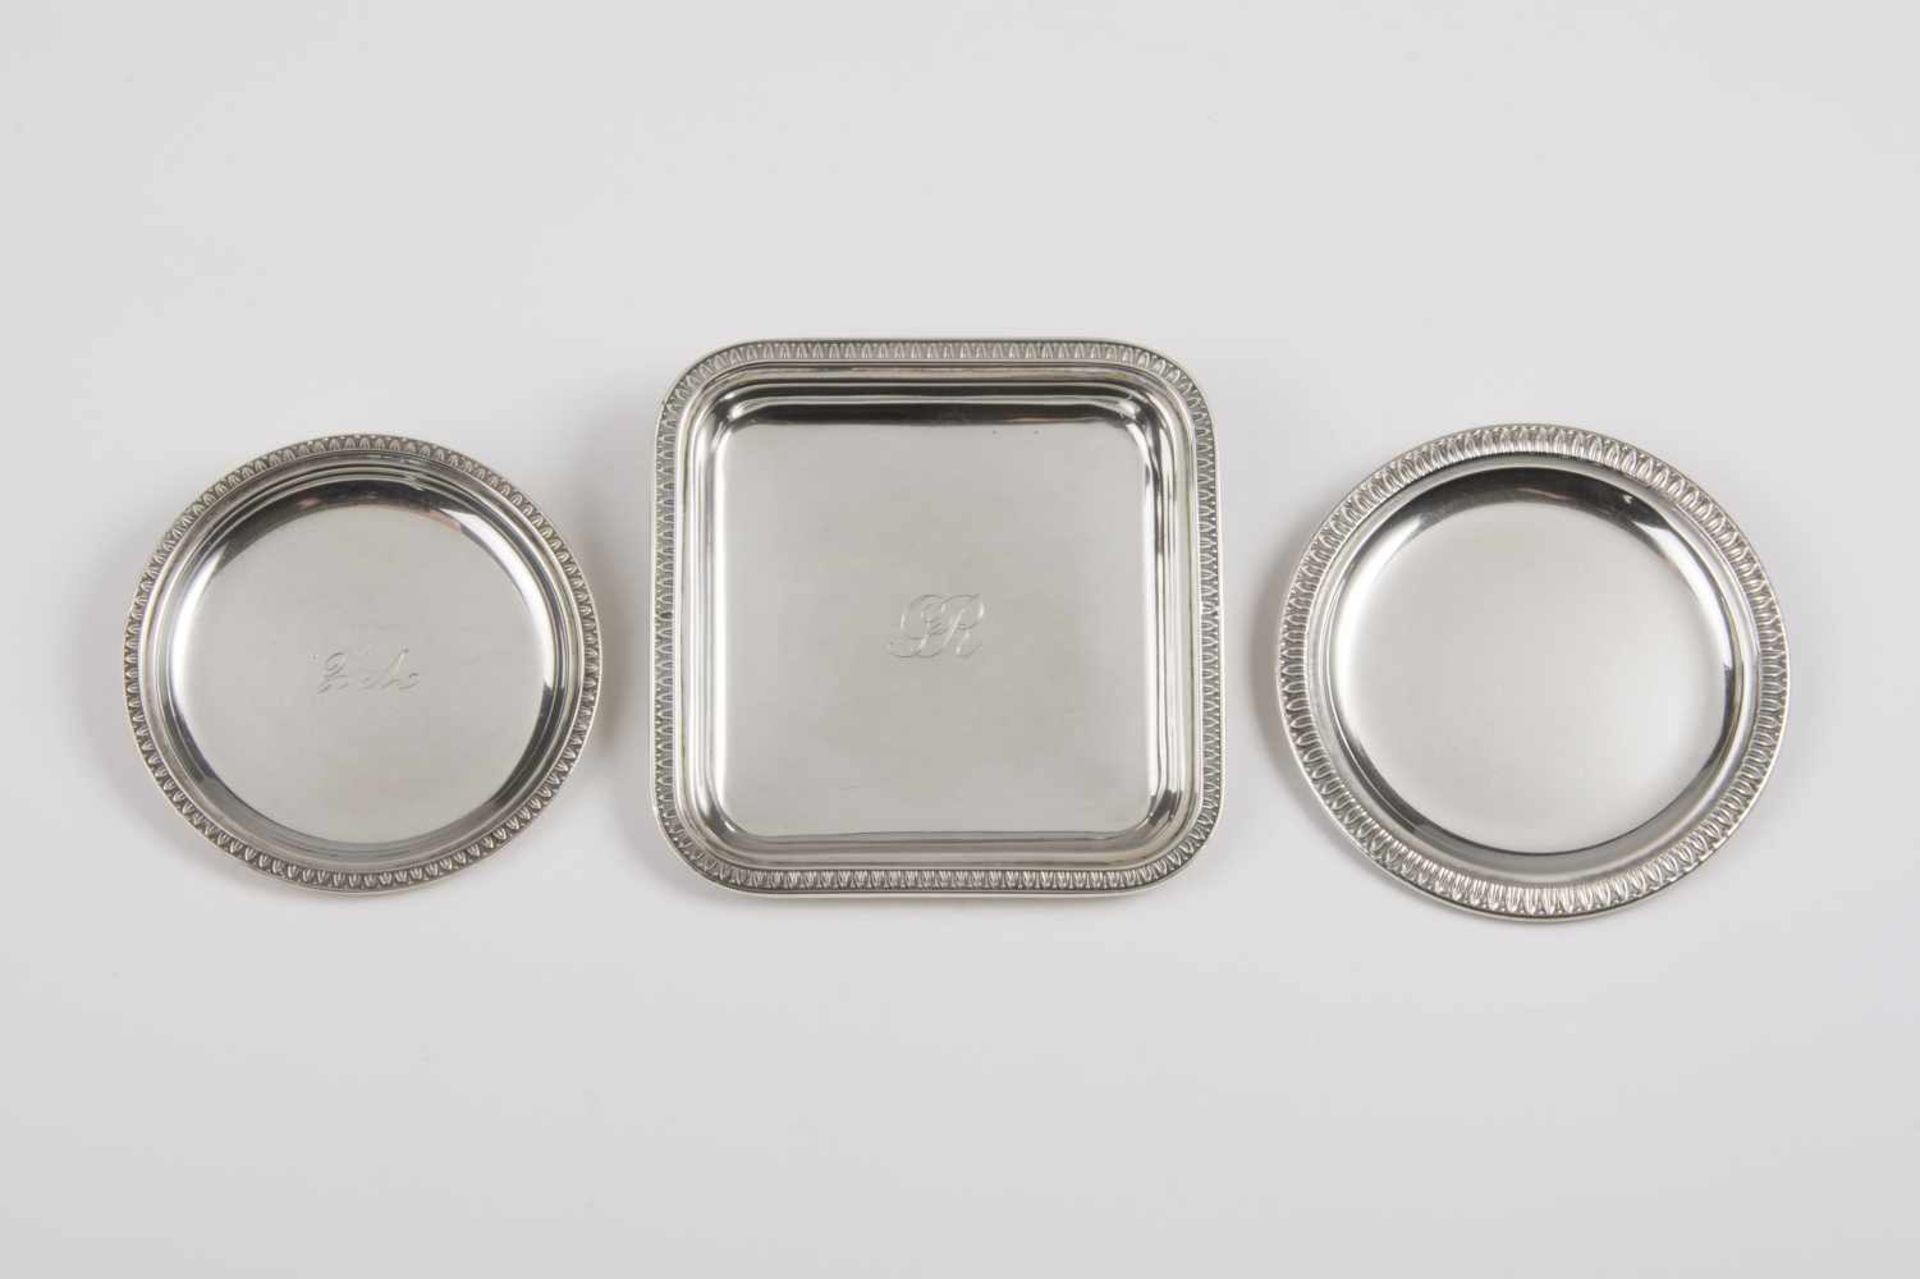 3 silberne kleine flache Tassen davon: 1 rechteckige Tasse, 10x10 cm, 2 runde Tassen, 9 und 8 cm,